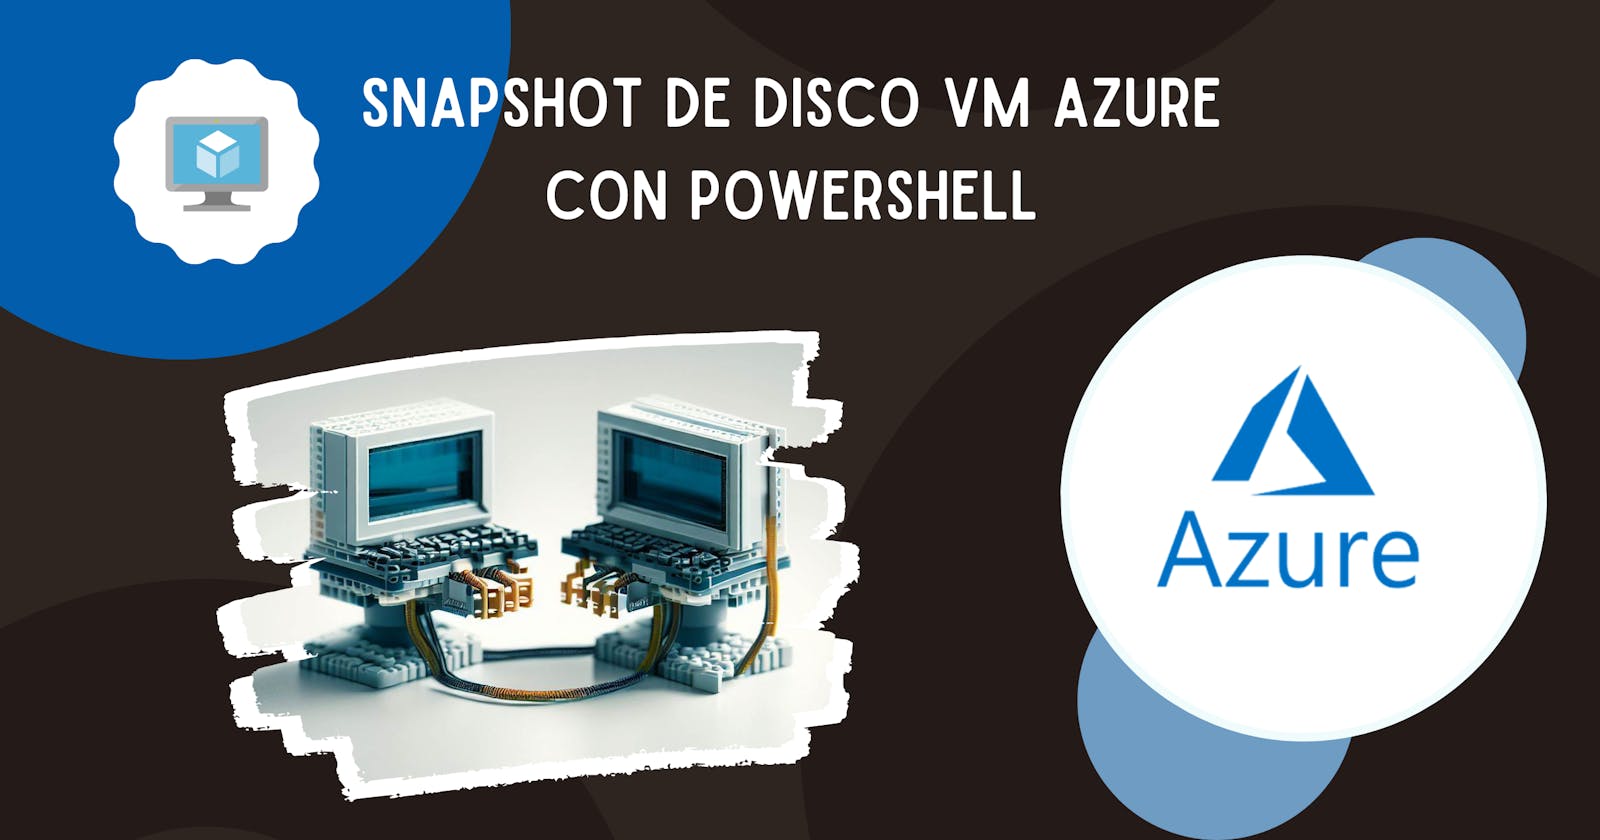 Snapshot de Disco VM Azure con PowerShell